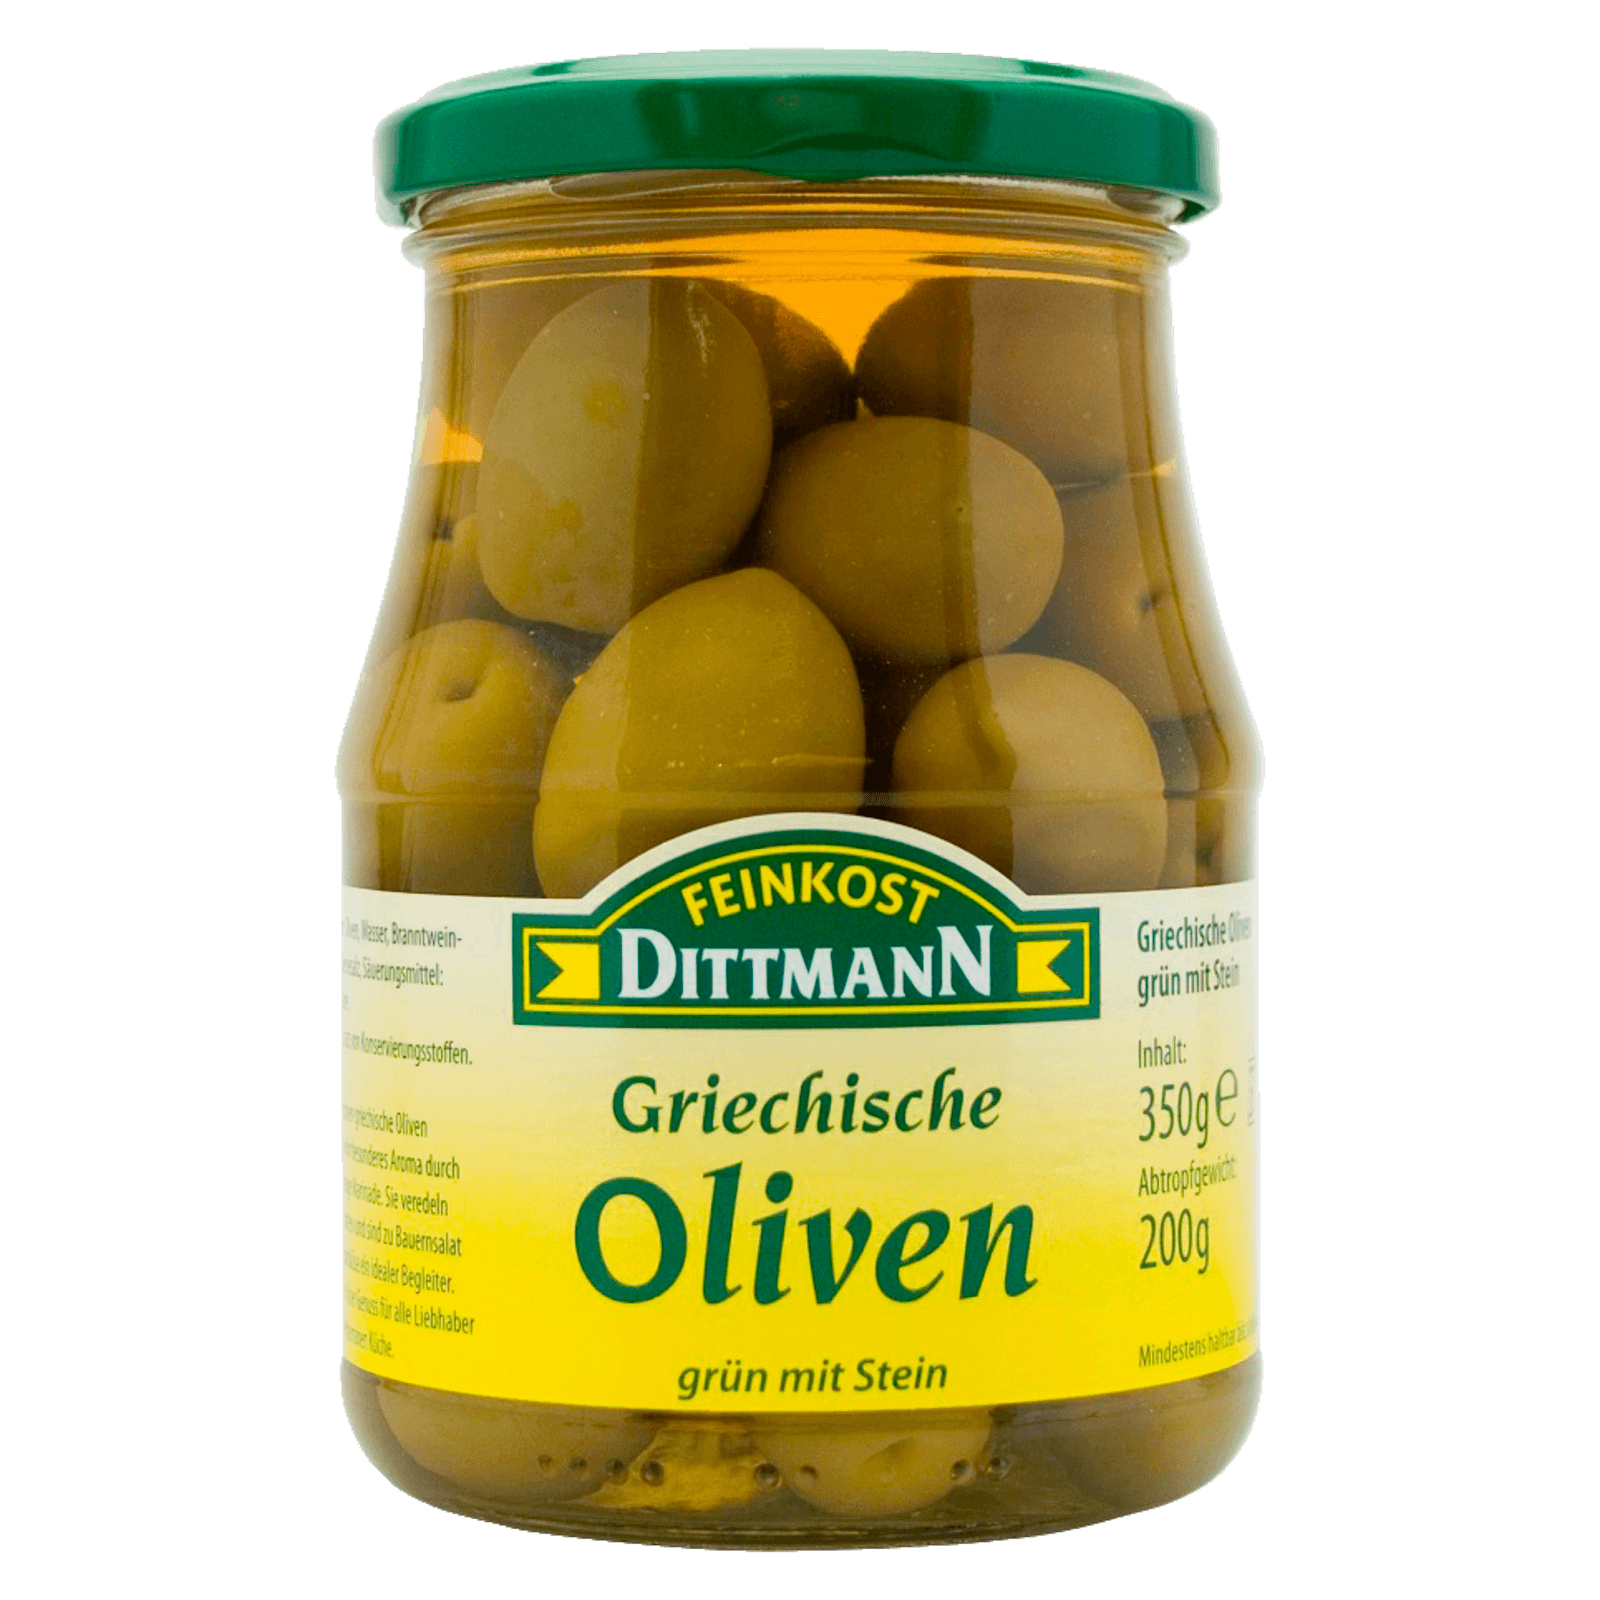 Feinkost Dittmann Griechische Oliven grün mit Stein 200g  für 2.99 EUR